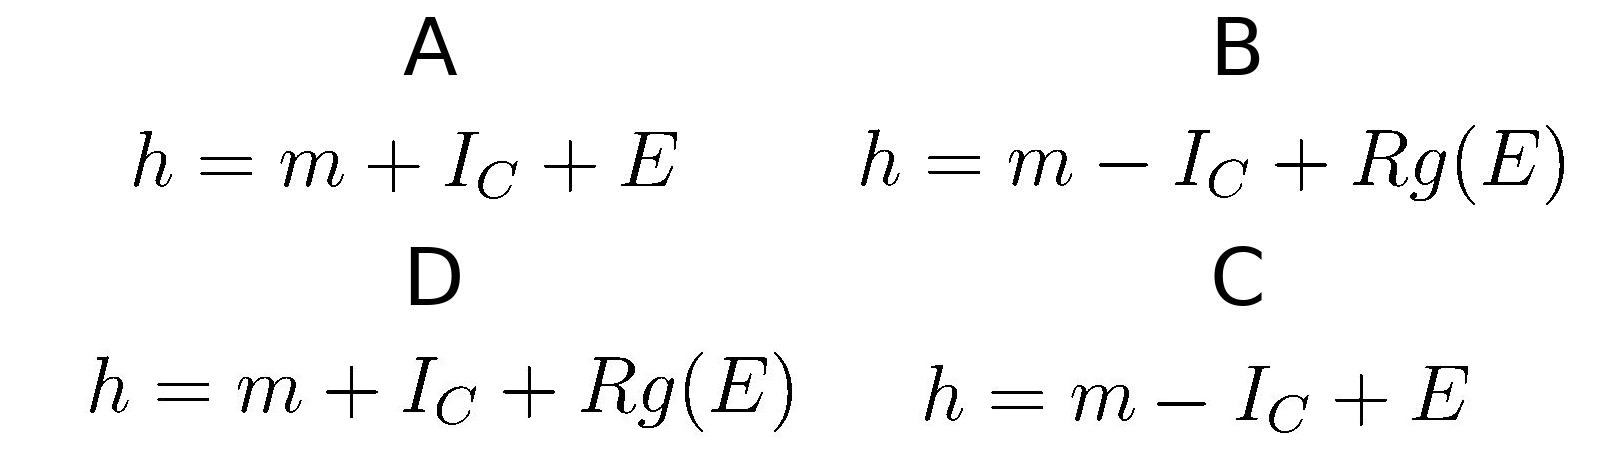 Quelle formule parmis les suivantes permet de déterminer le degré d'hyperstatisme d'un système ?